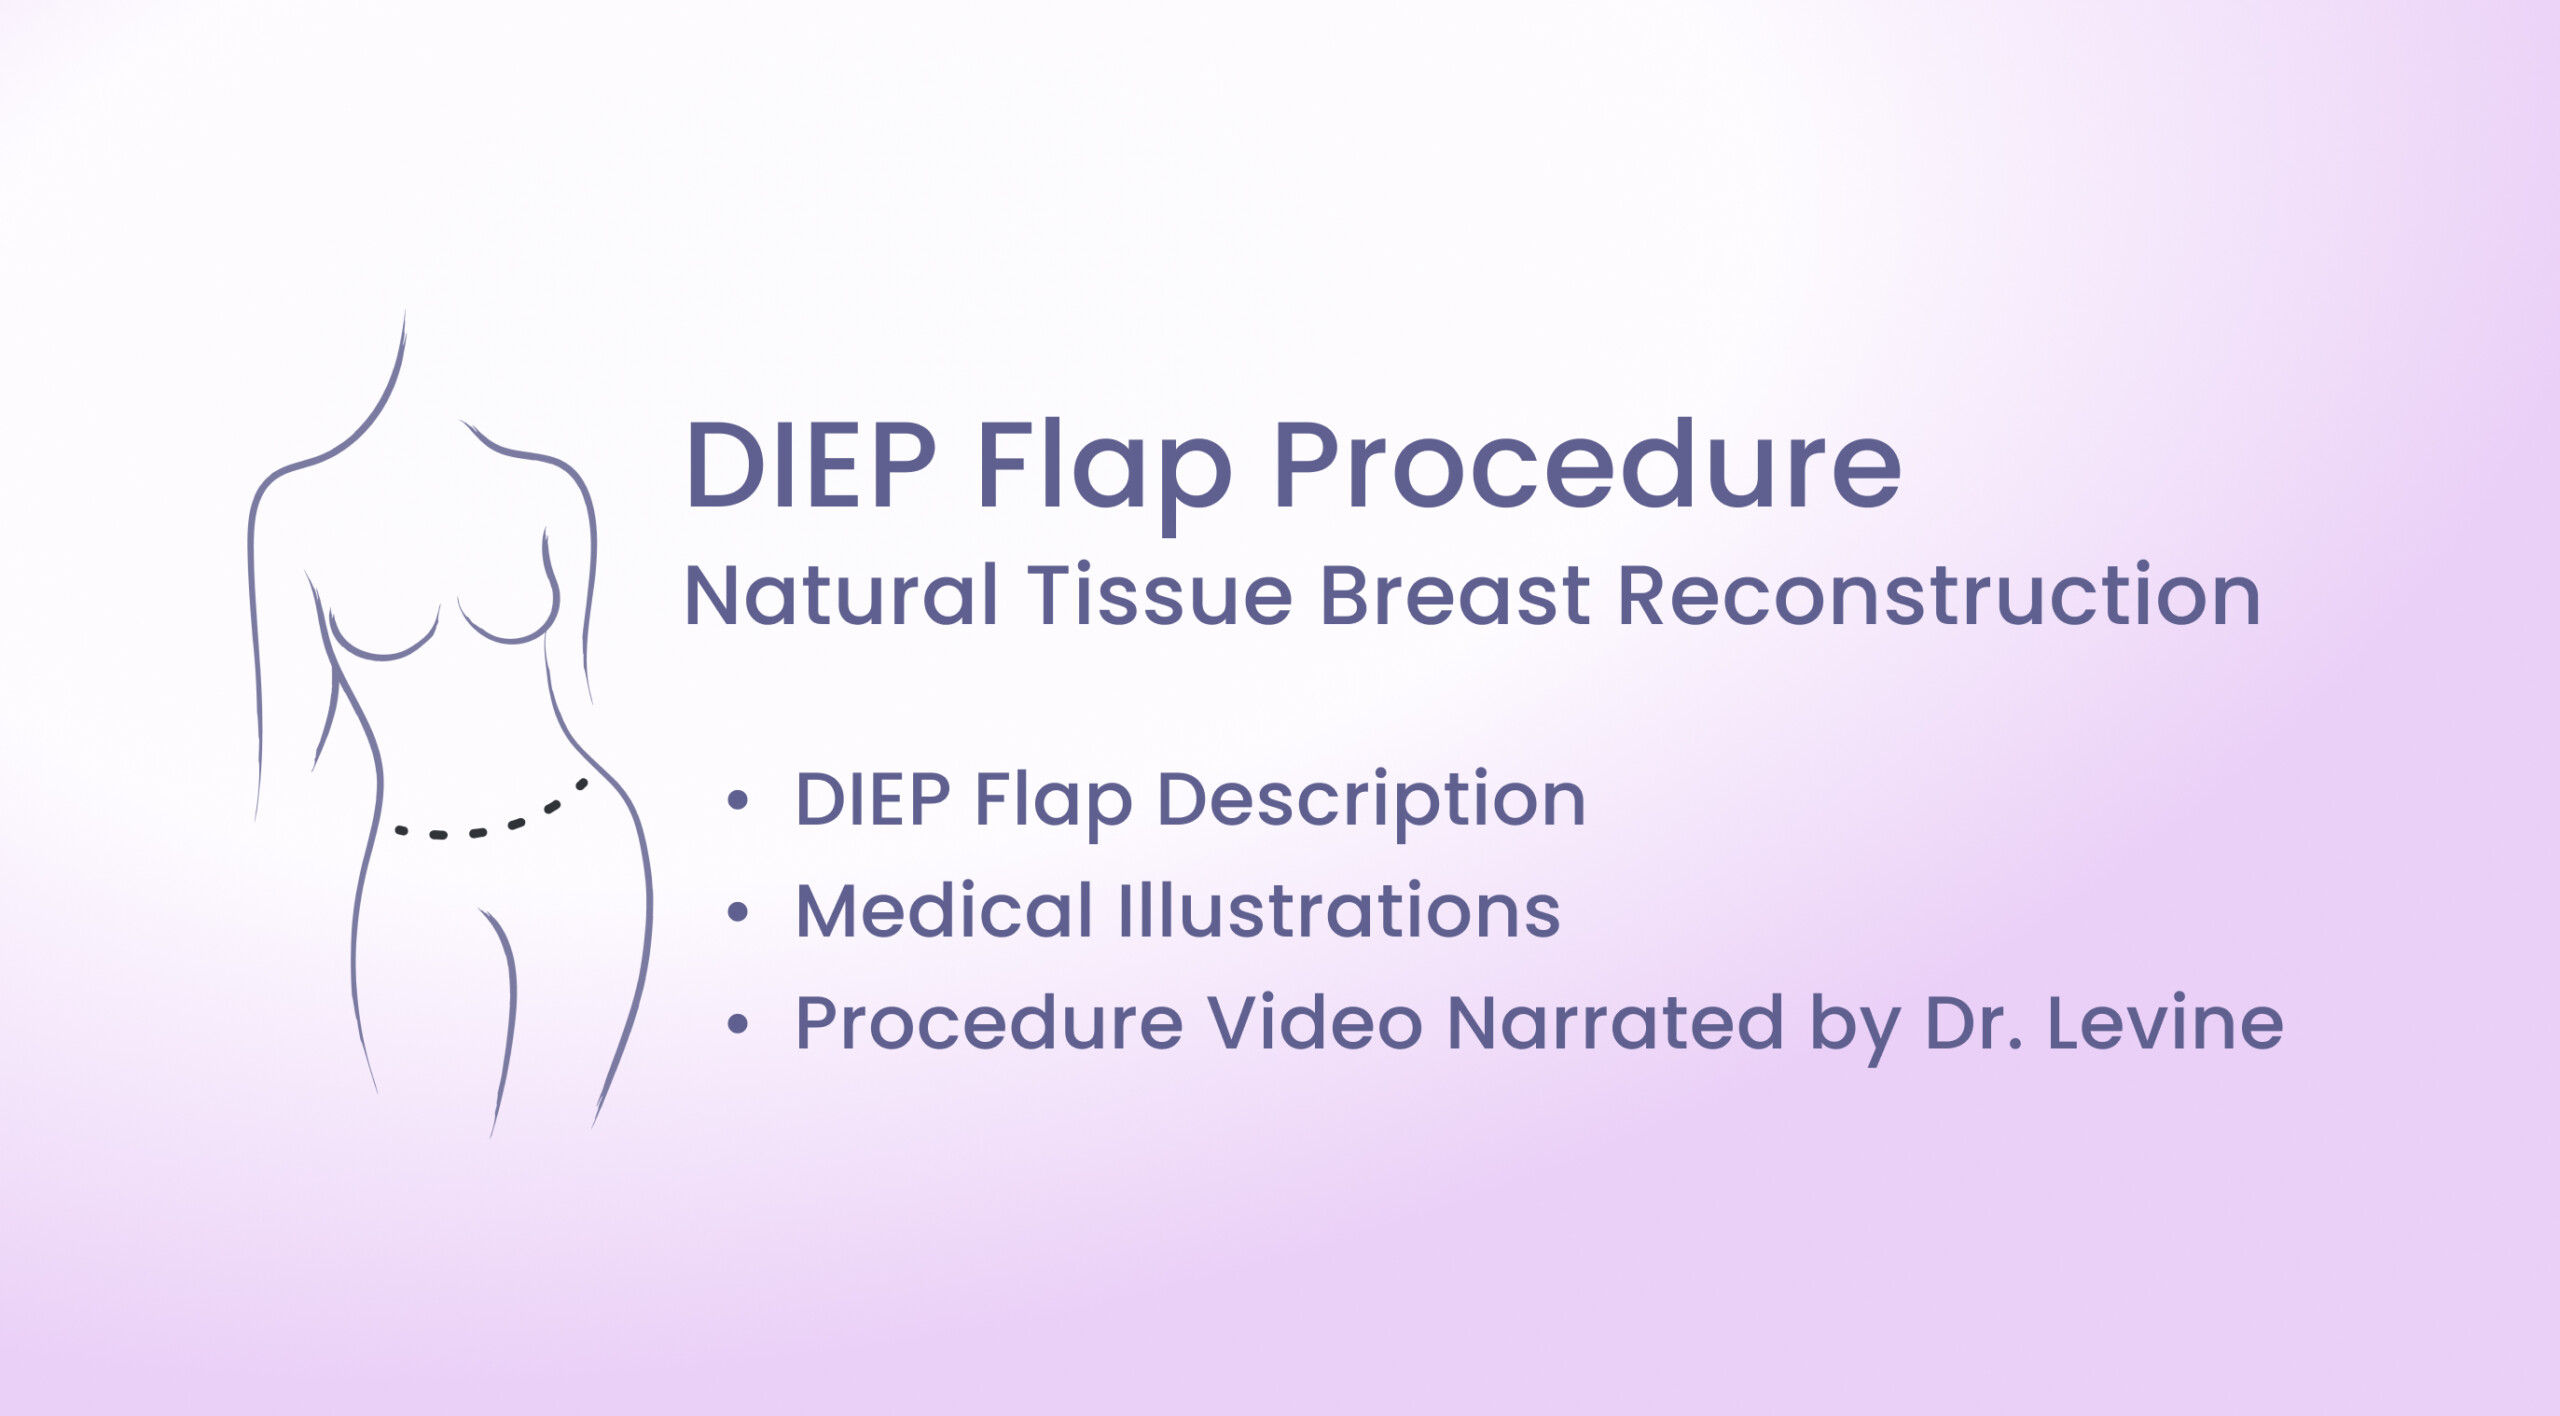 DIEP Flap Breast Reconstruction Procedure